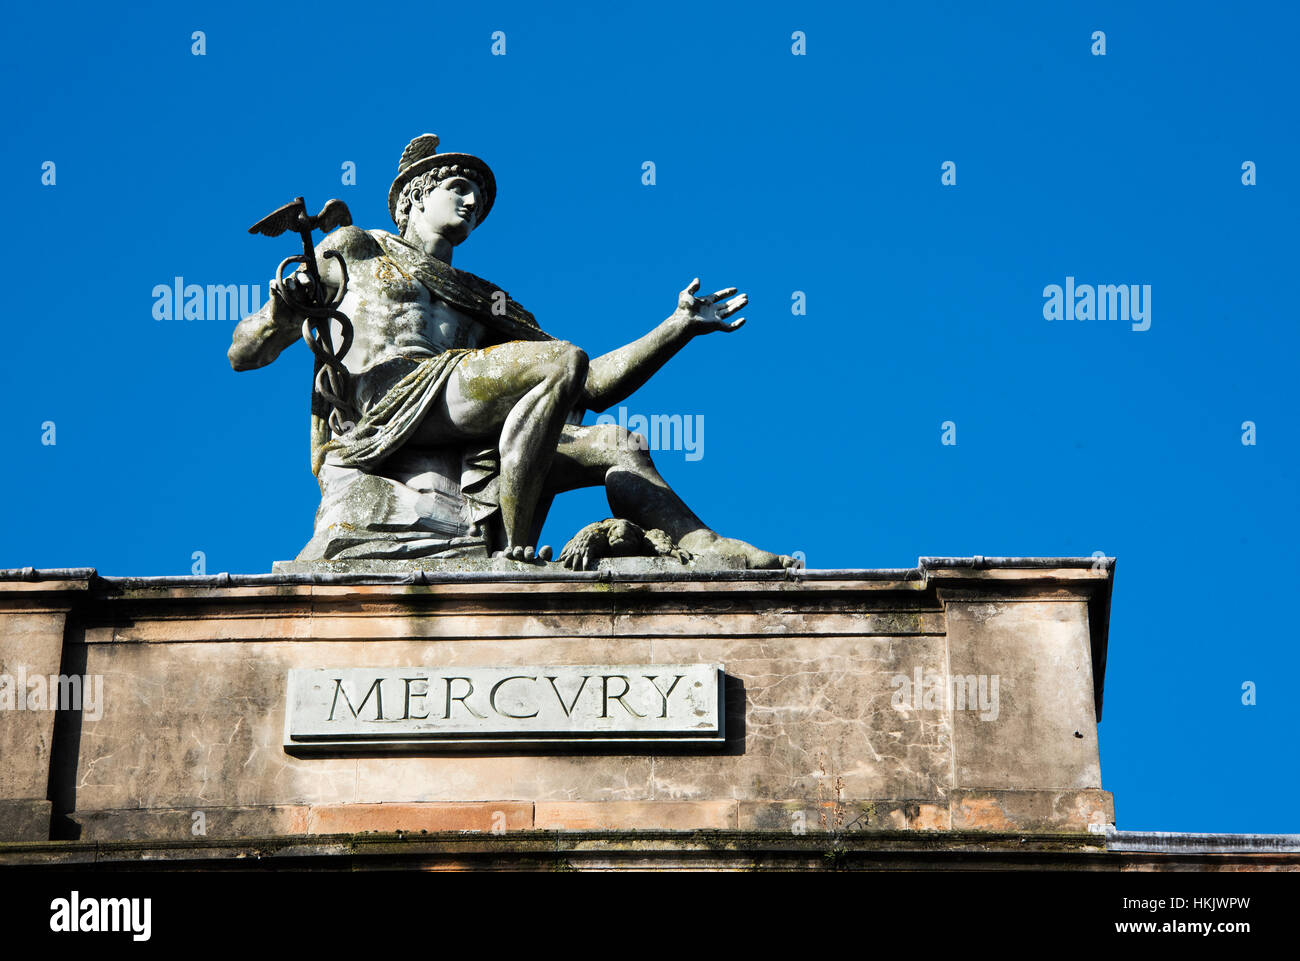 Sculpture/statue de Mercure, dieu romain sur le toit de l'Italien Centre, Glasgow, Ecosse Banque D'Images